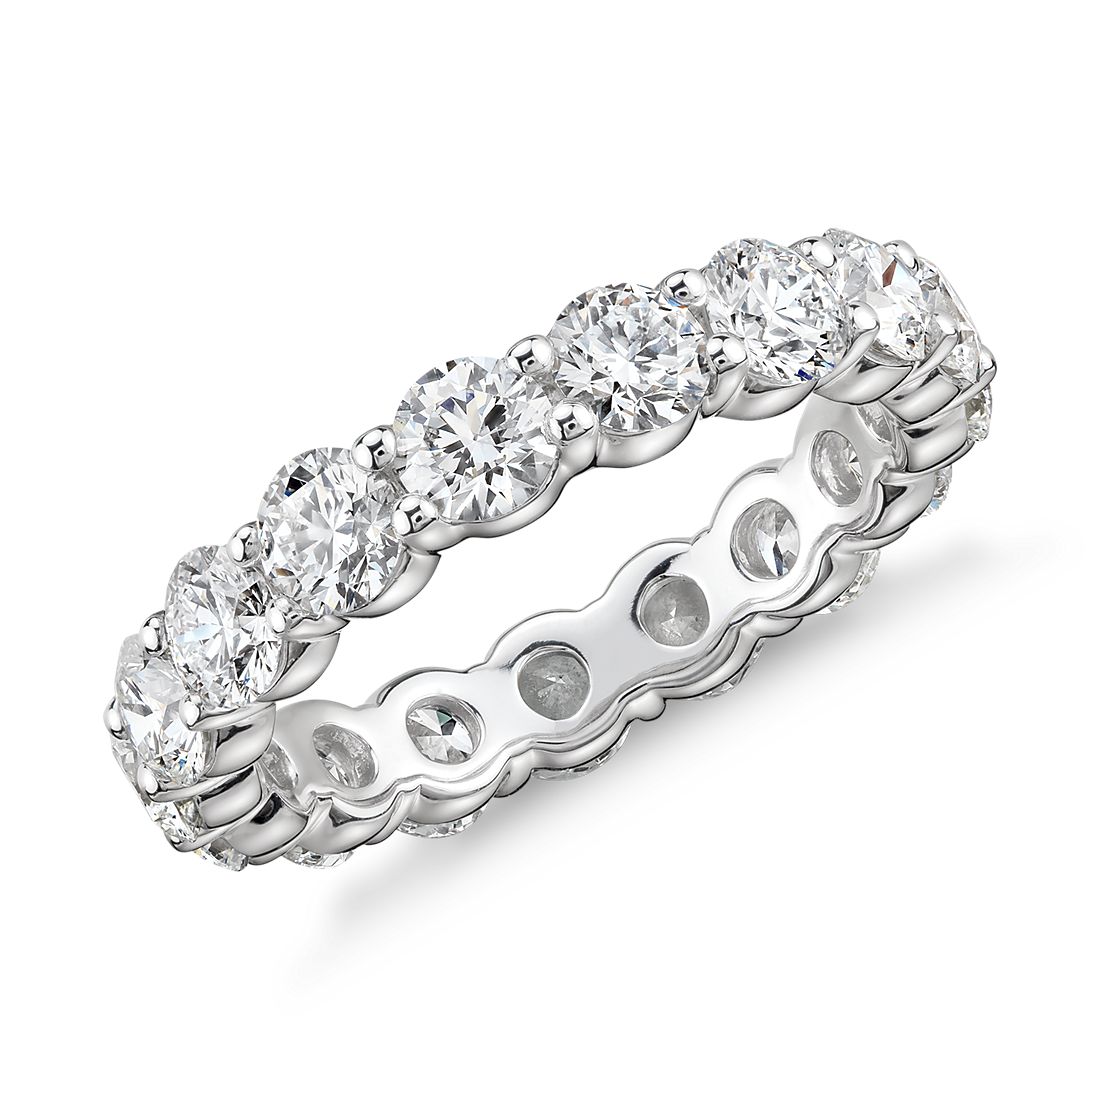 Blue Nile Signature Comfort Fit Diamond Eternity Ring in Platinum (2 3/4 ct. tw.)